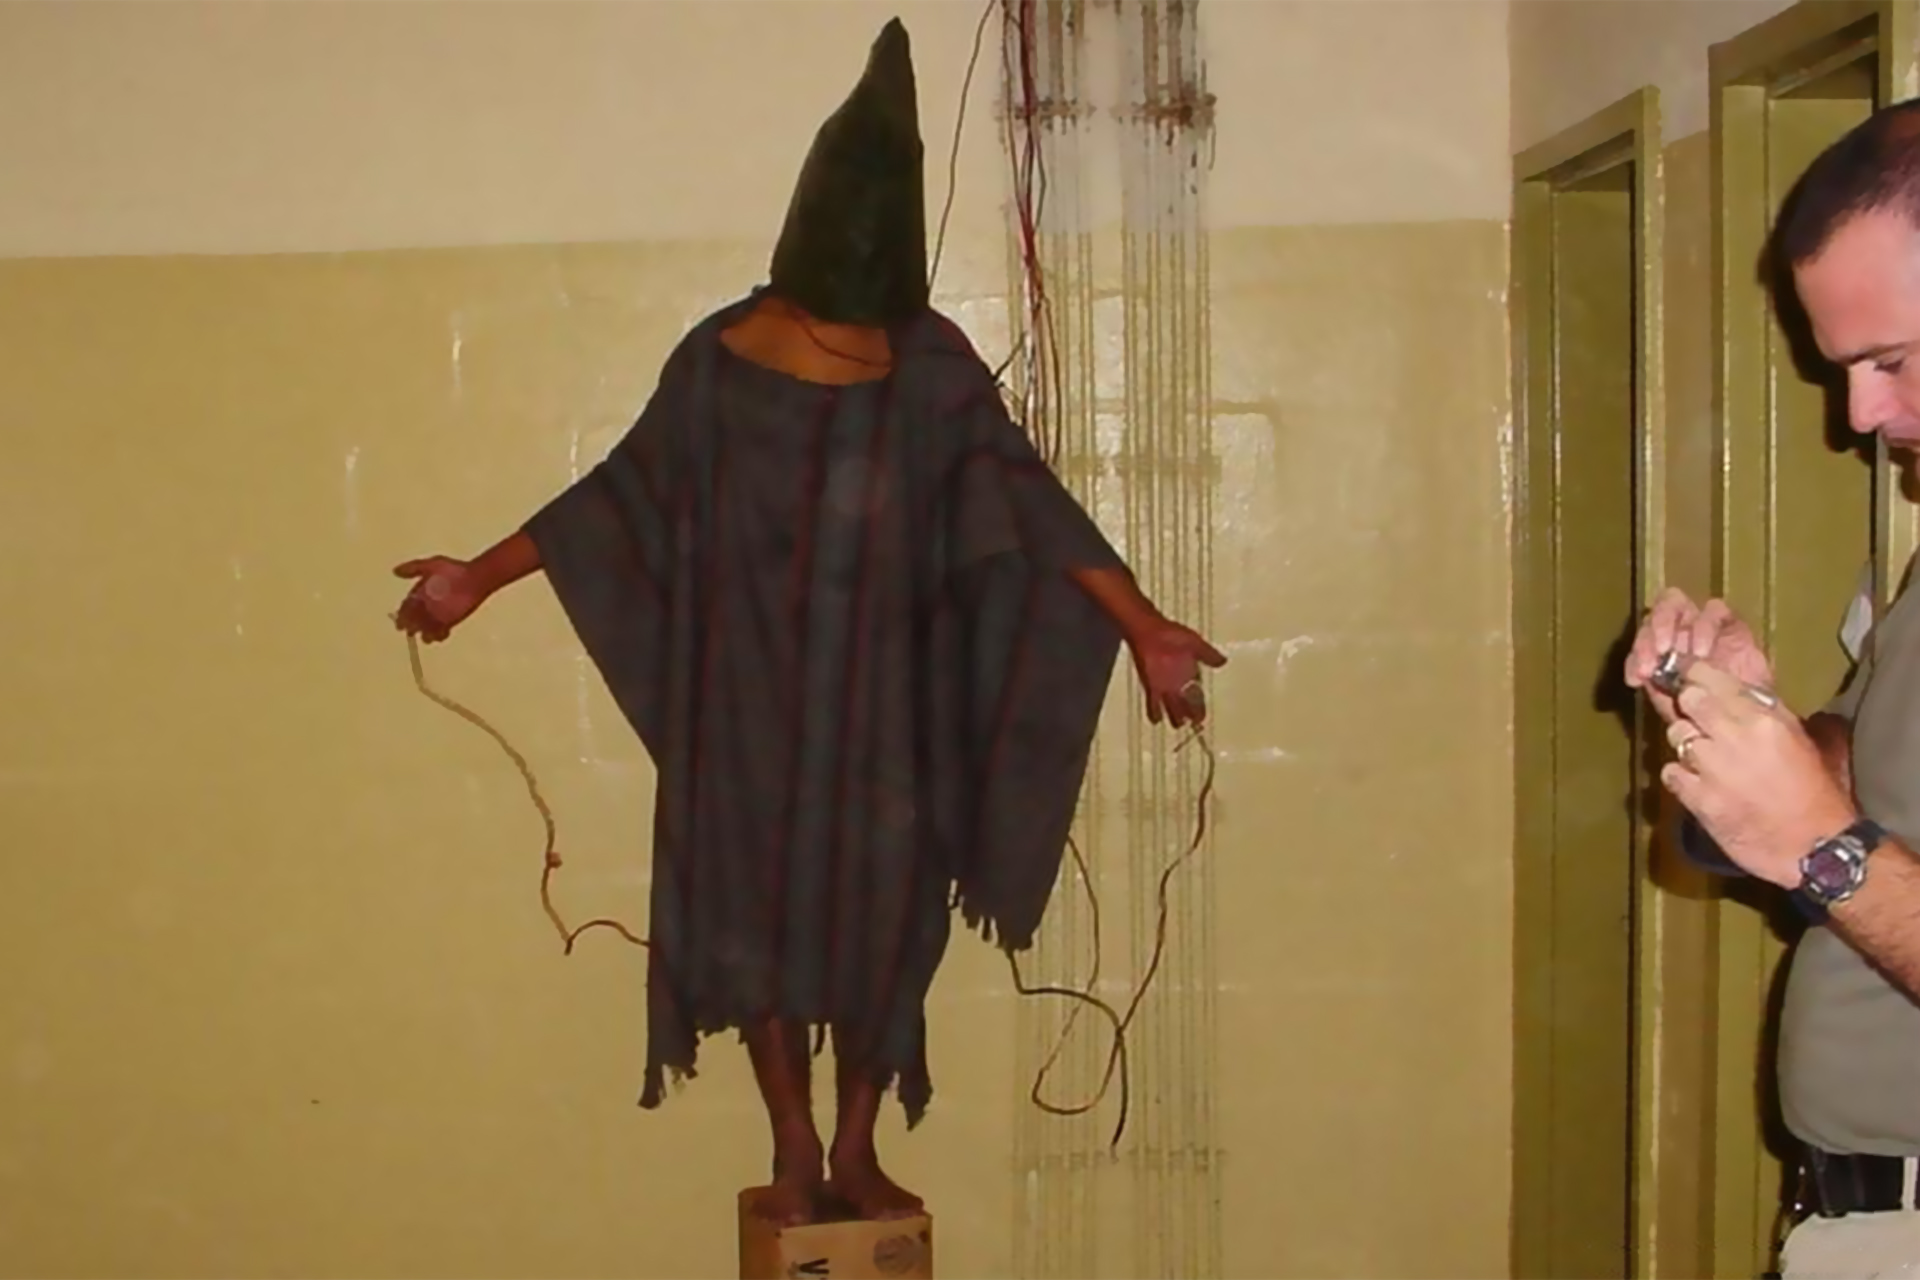 أخيرا.. قضية تعذيب في أبو غريب أمام القضاء بالولايات المتحدة | أخبار – البوكس نيوز